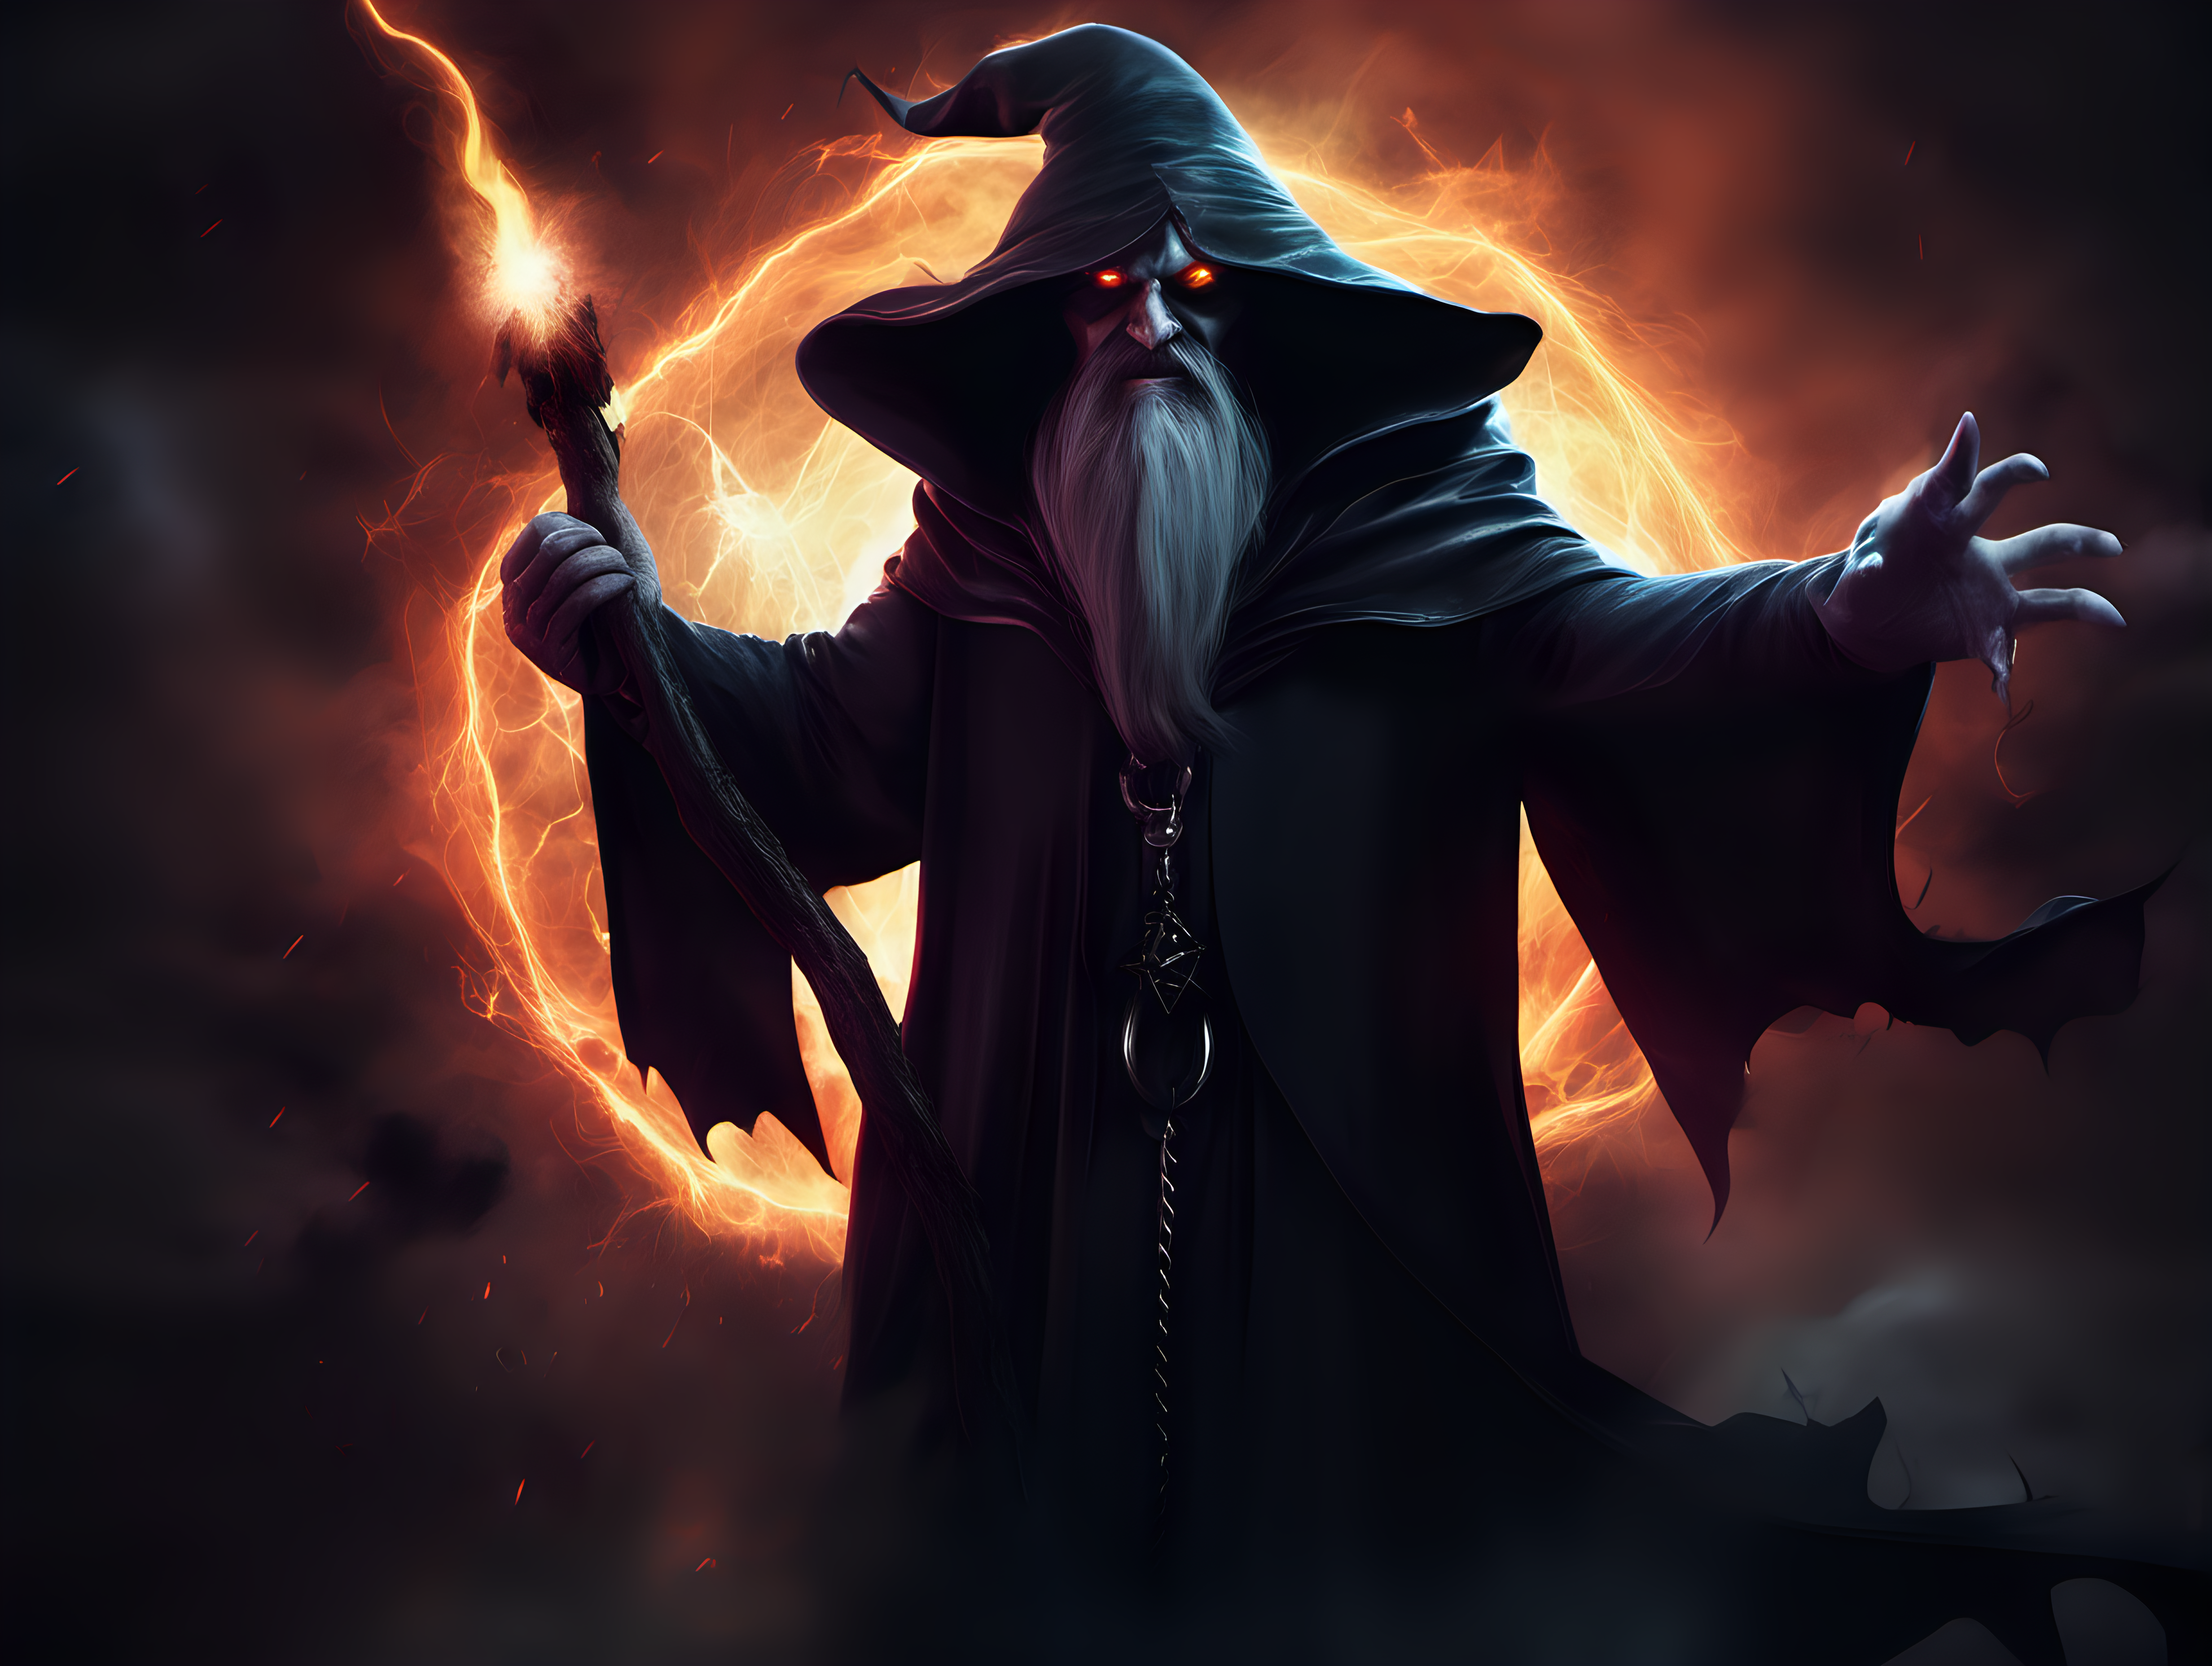 Create an epic wallpaper of an evil dark wizard
